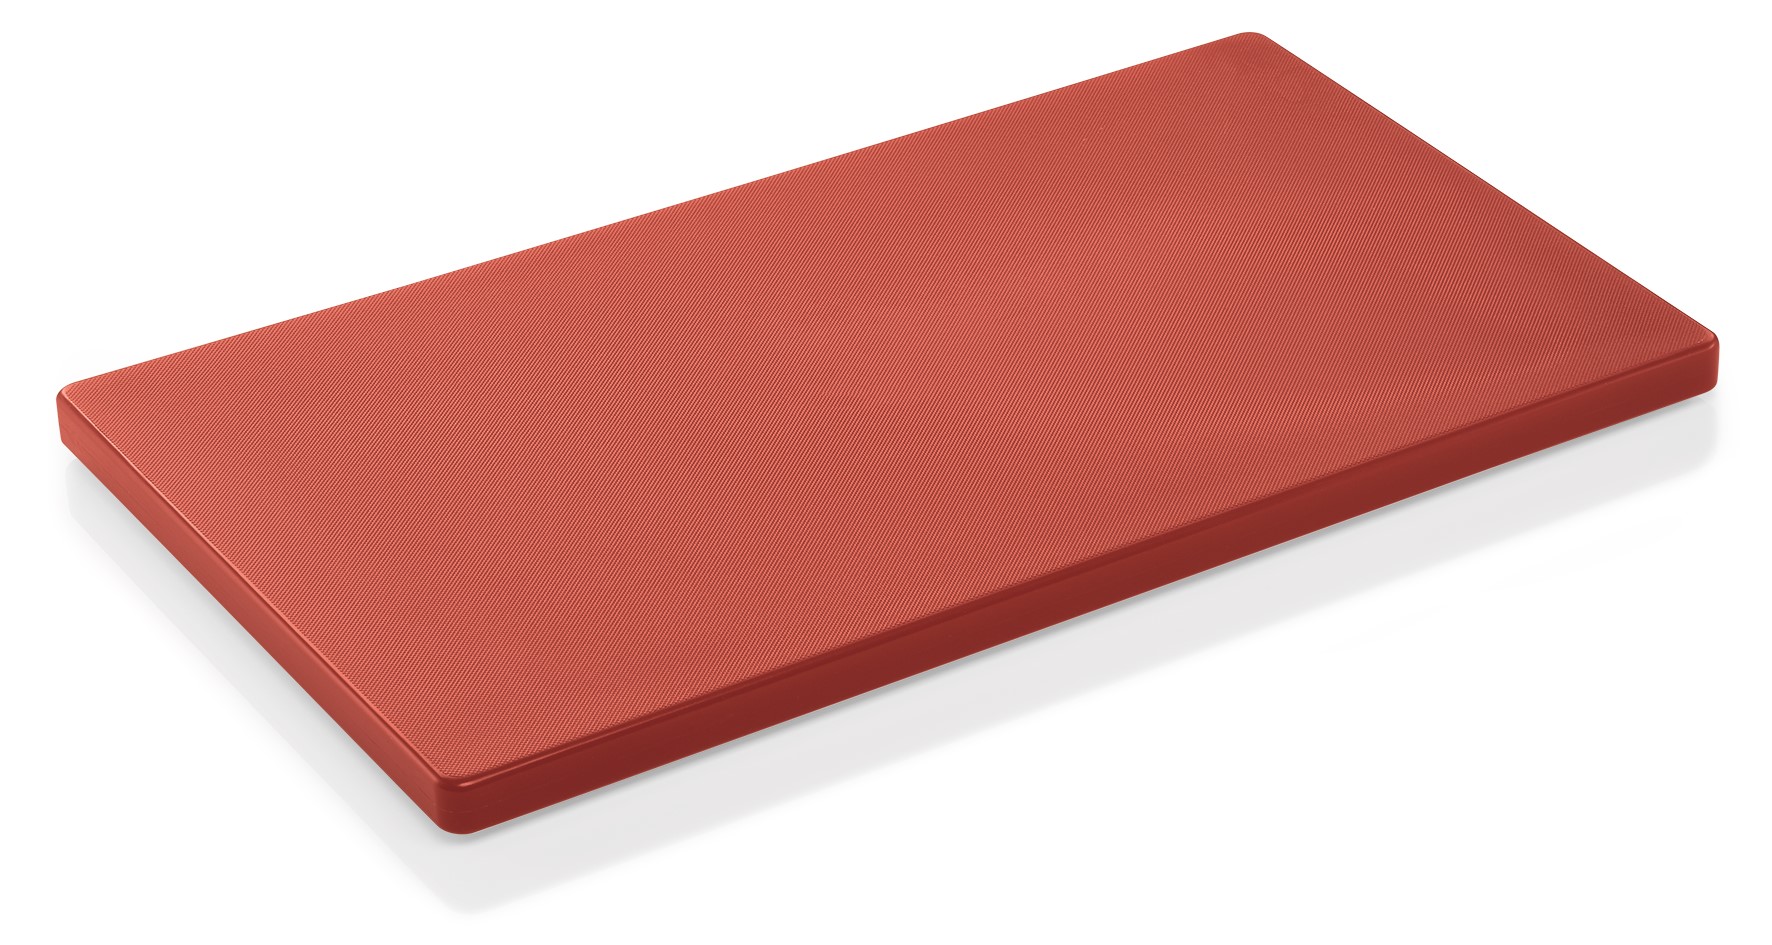 Schneidebrett aus Kunststoff - 60 x 40 x 2 cm in verschiedenen Farben Rot